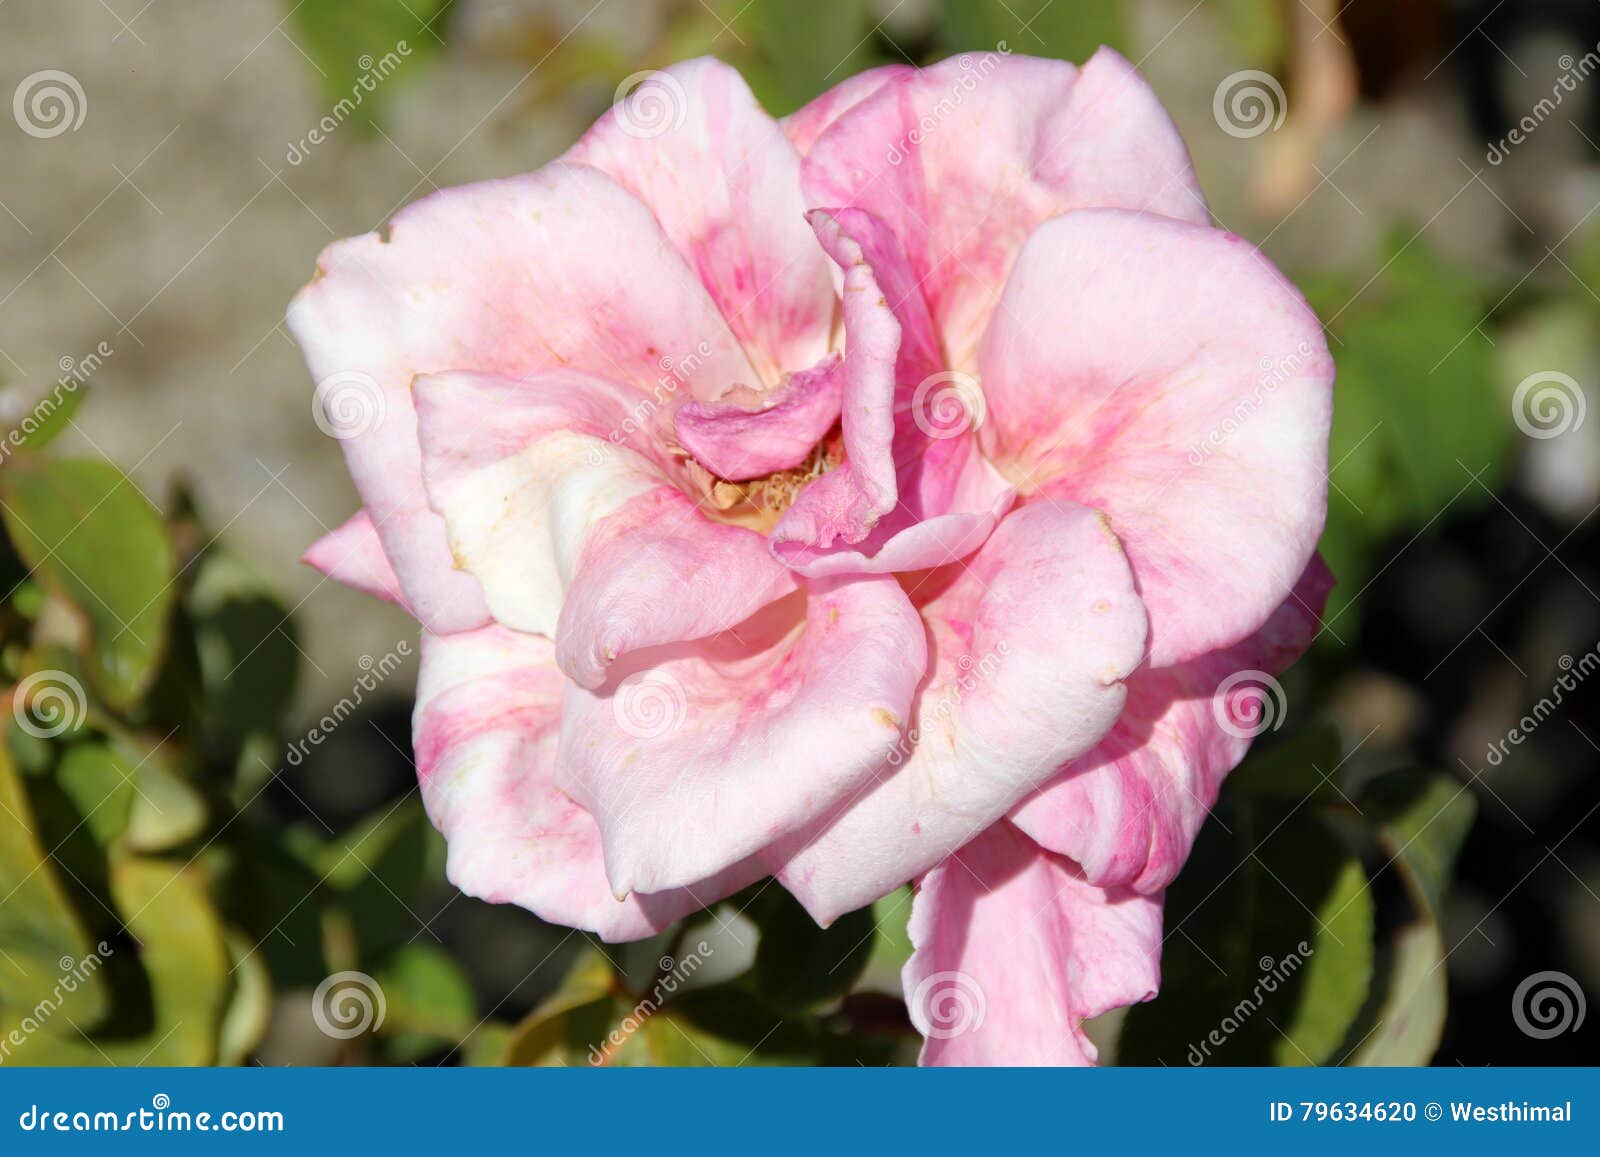 Rosa 'Memorial Day' stock photo. Image of bush, fragrance ...